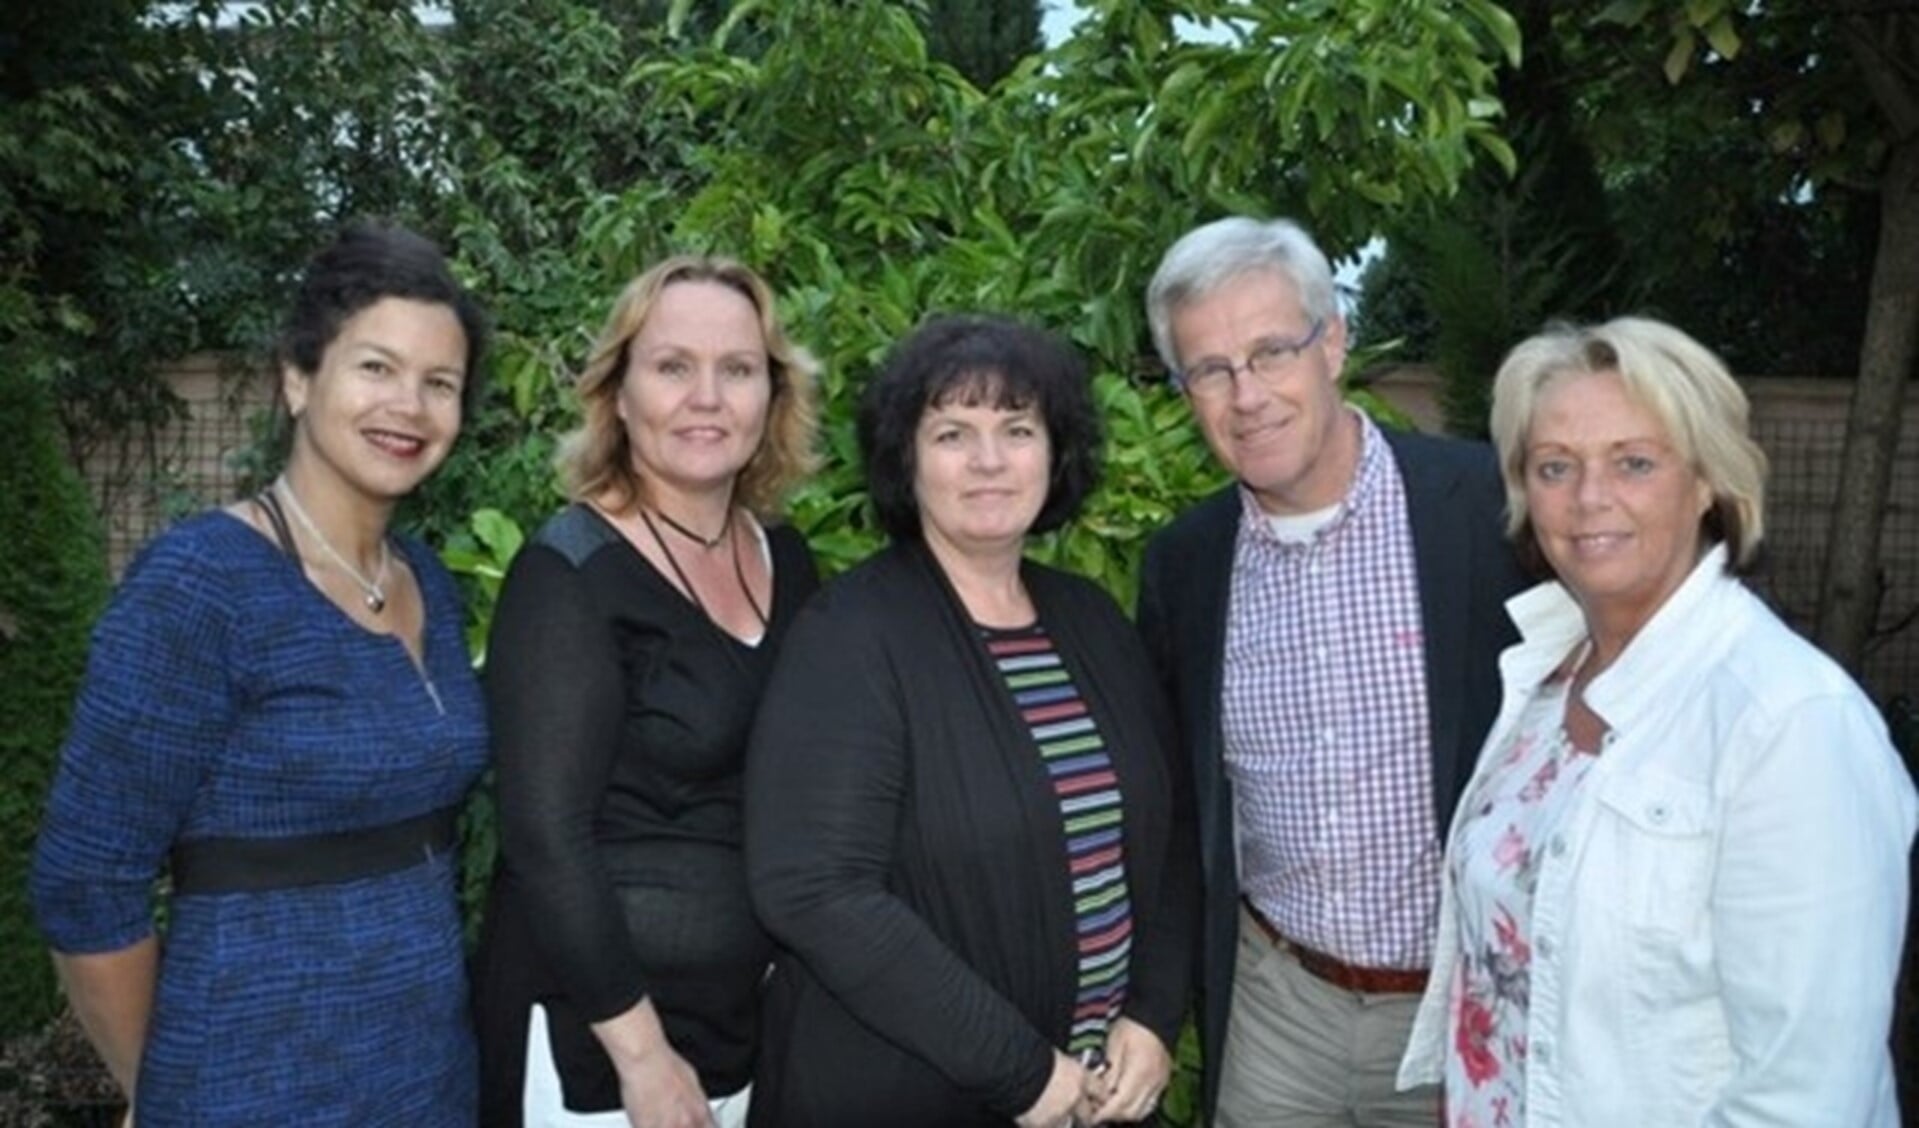 Anita (m) en Geert (R) en de andere bestuursleden van Stichting Wereld lichtjesdag Zoetermeer. (foto stichting WLD) (Foto: Robbert Roos)